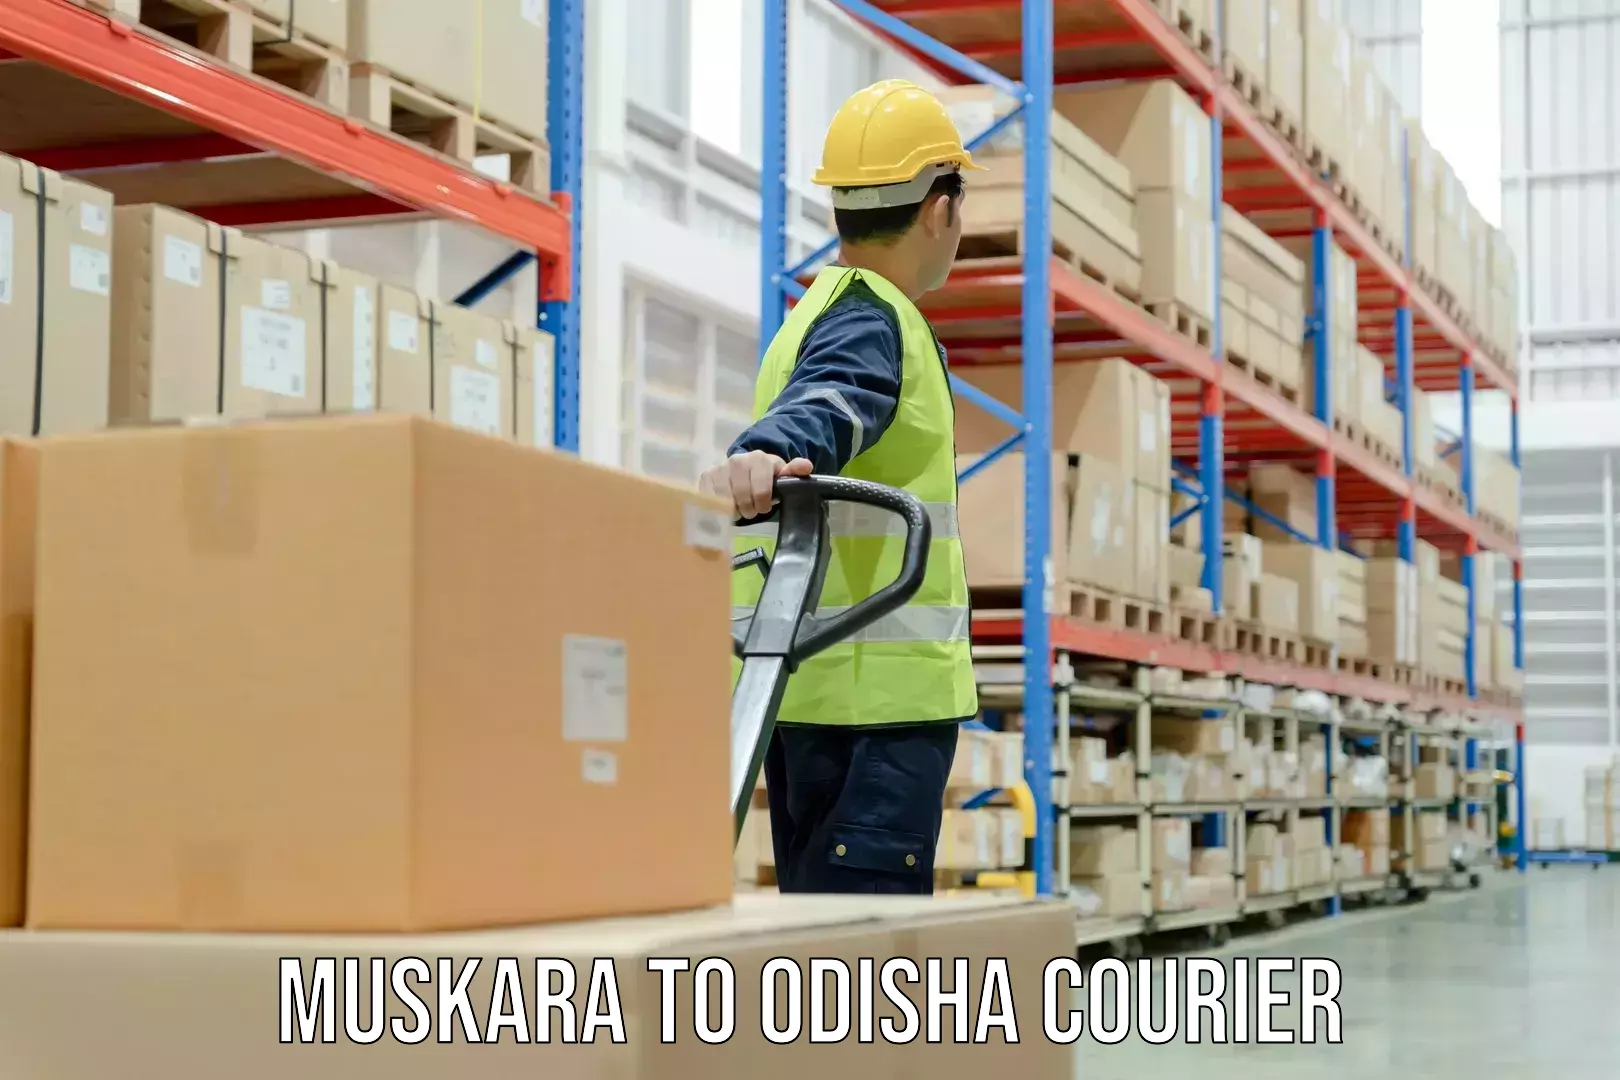 Courier insurance Muskara to Parlakhemundi